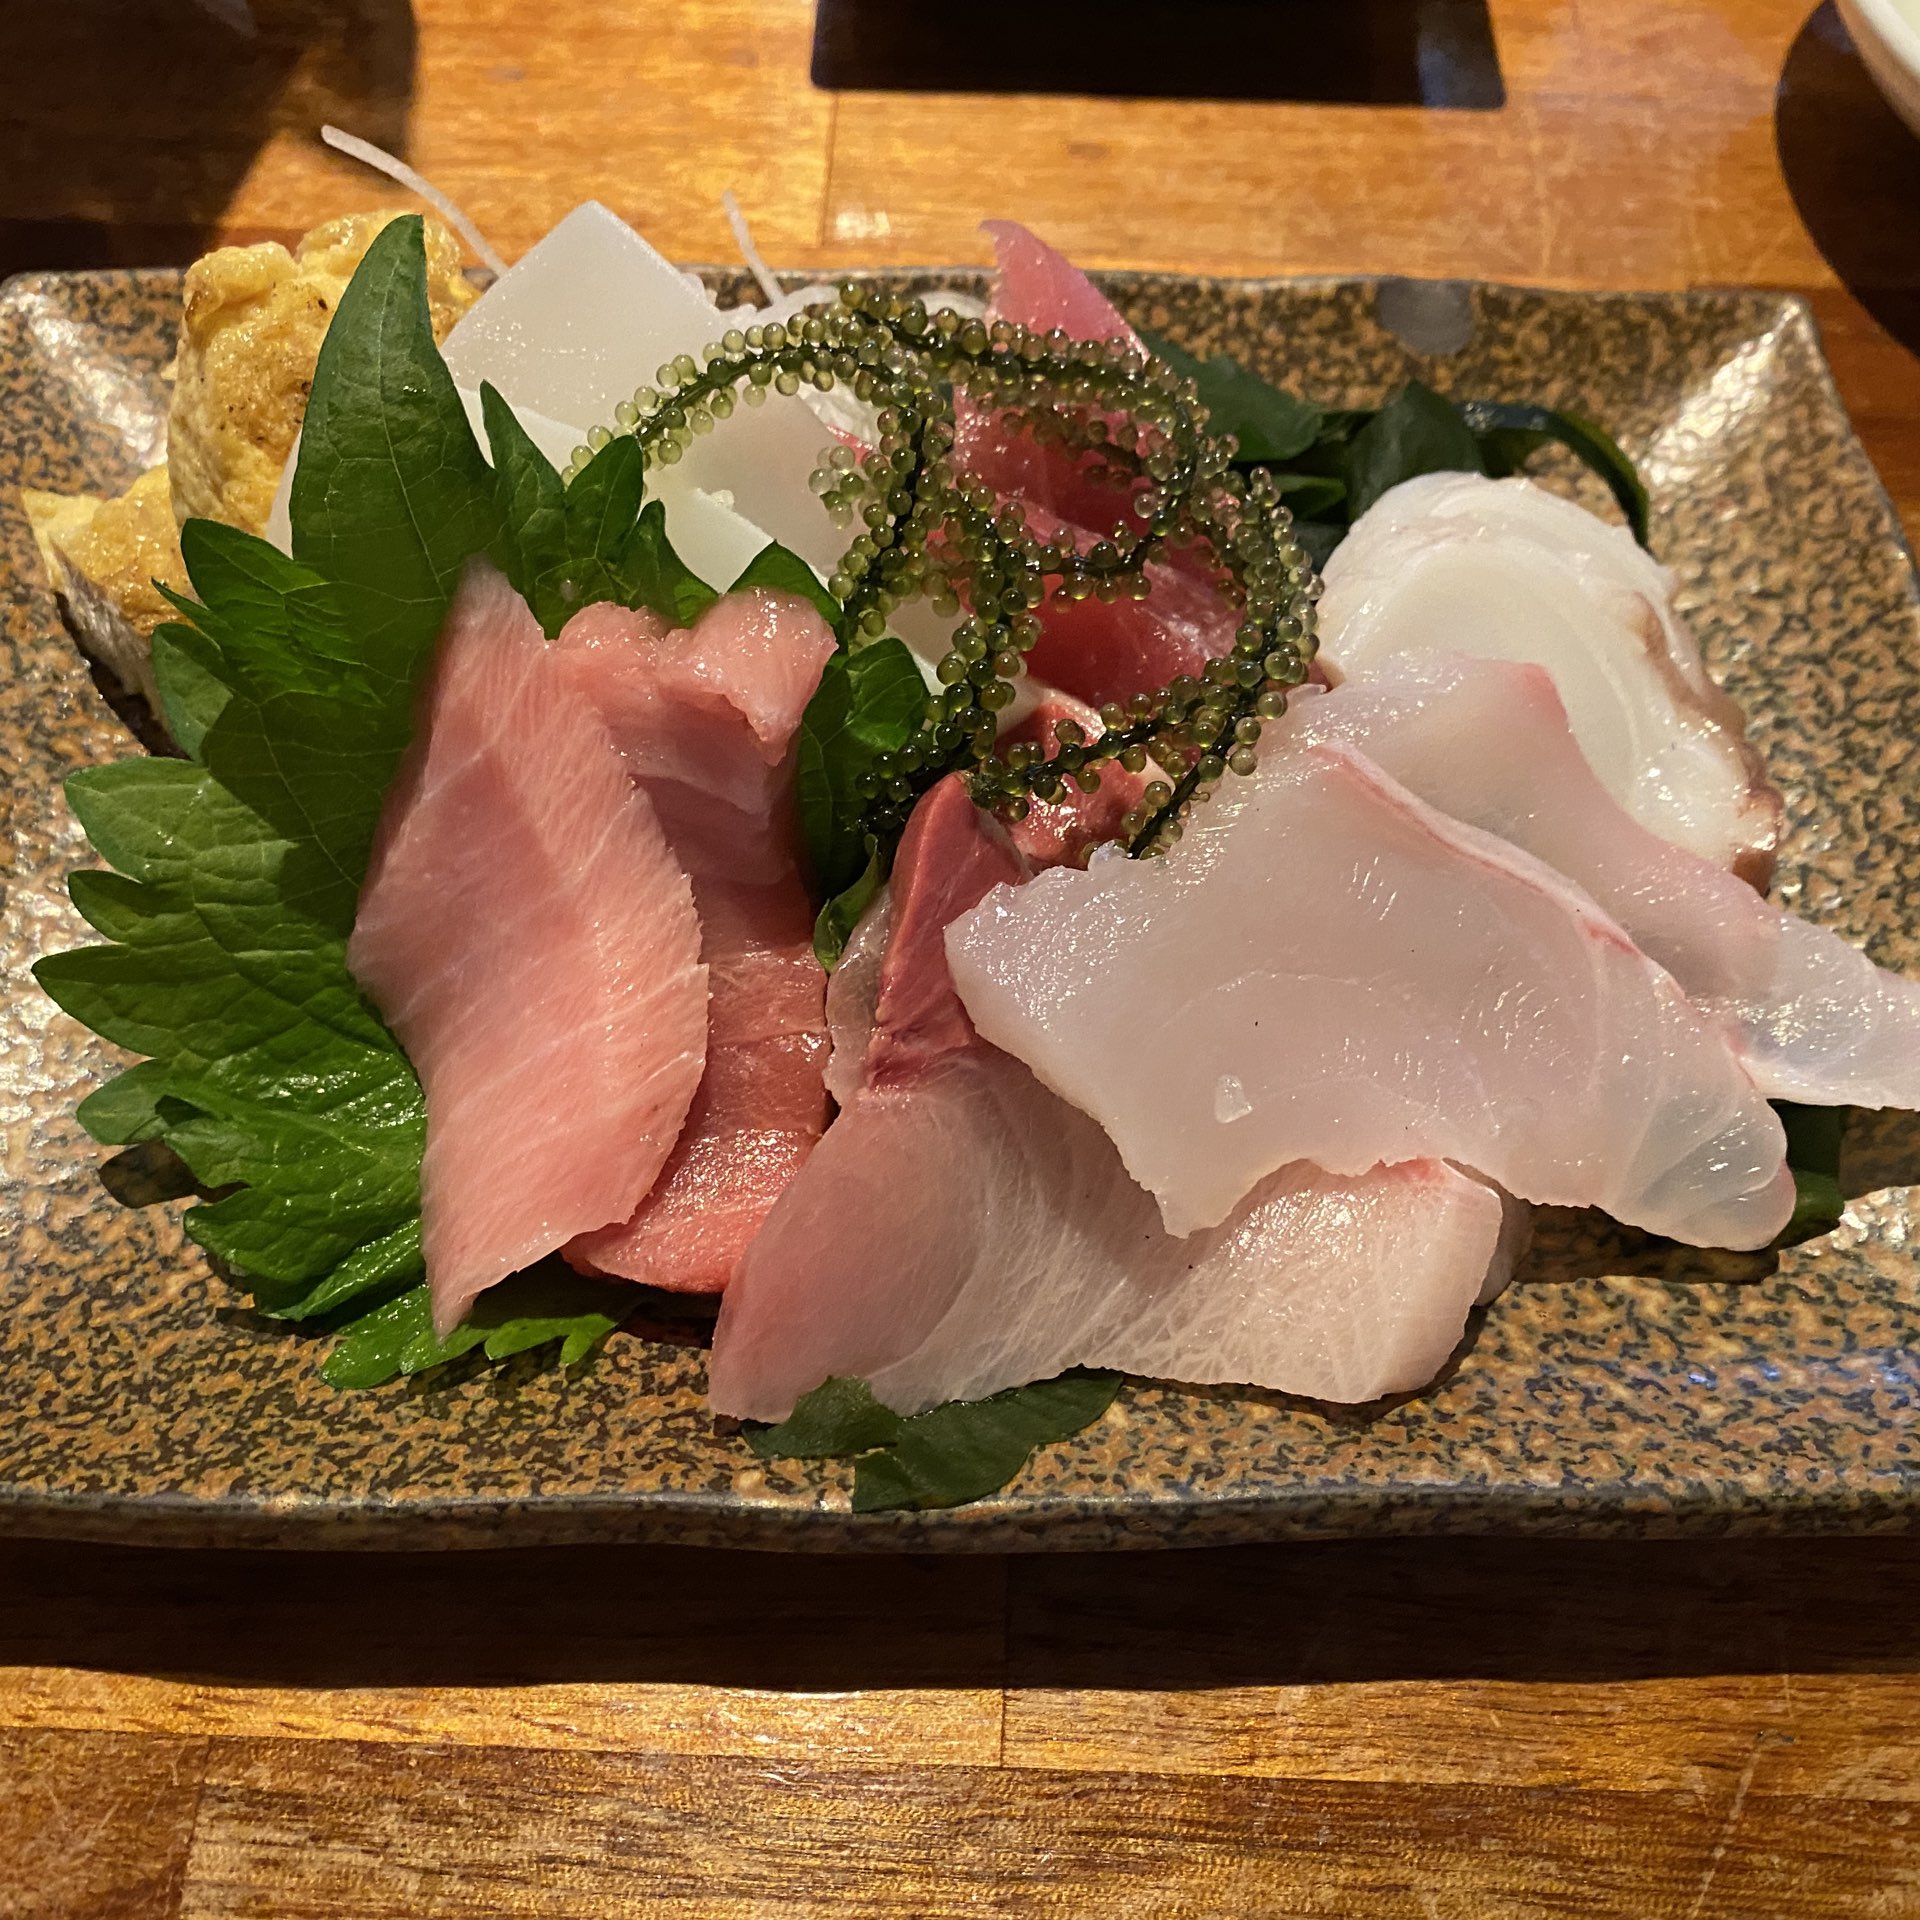 冲绳石垣岛的“人”金枪鱼很美味